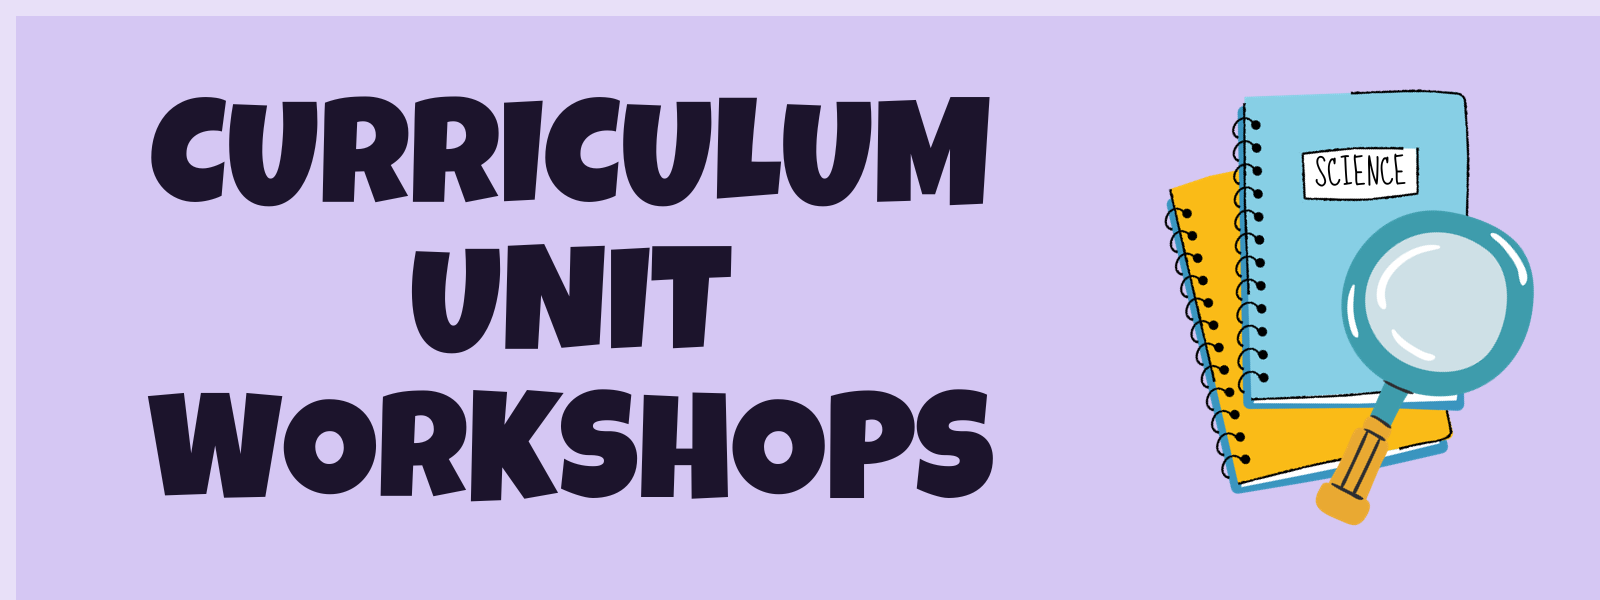 Curriculum Unit Workshops graphic